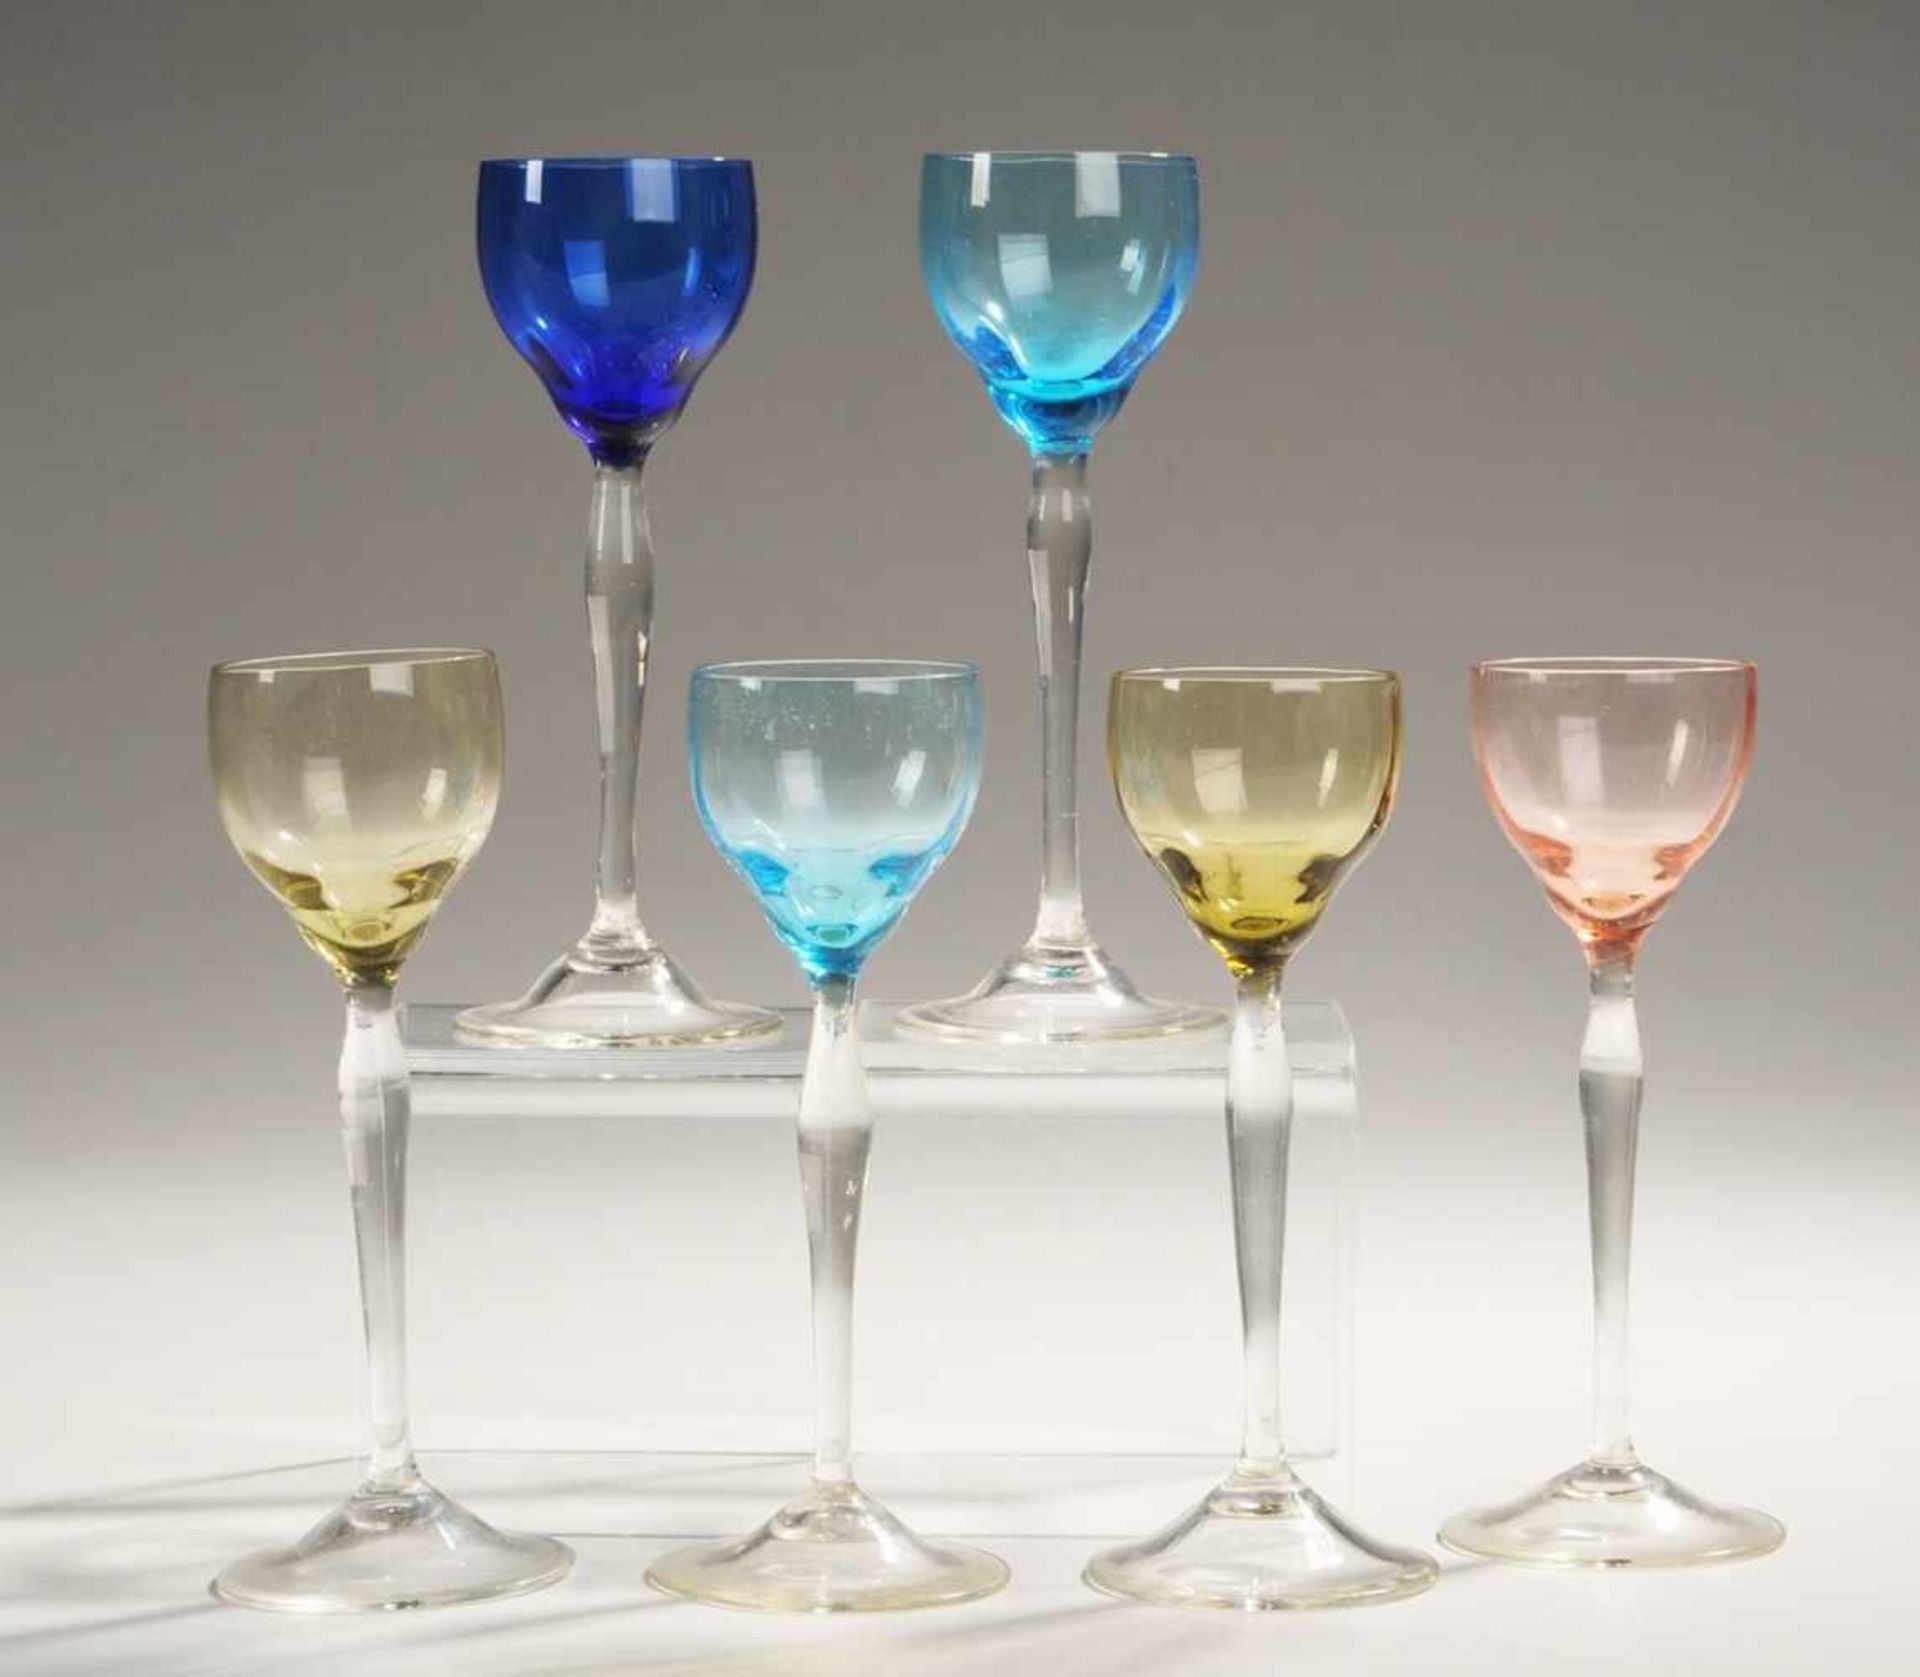 Sechs Jugendstil-LikörstängelgläserFarbloses Glas, part. blau, olivgrün bzw. rot unterfangen.